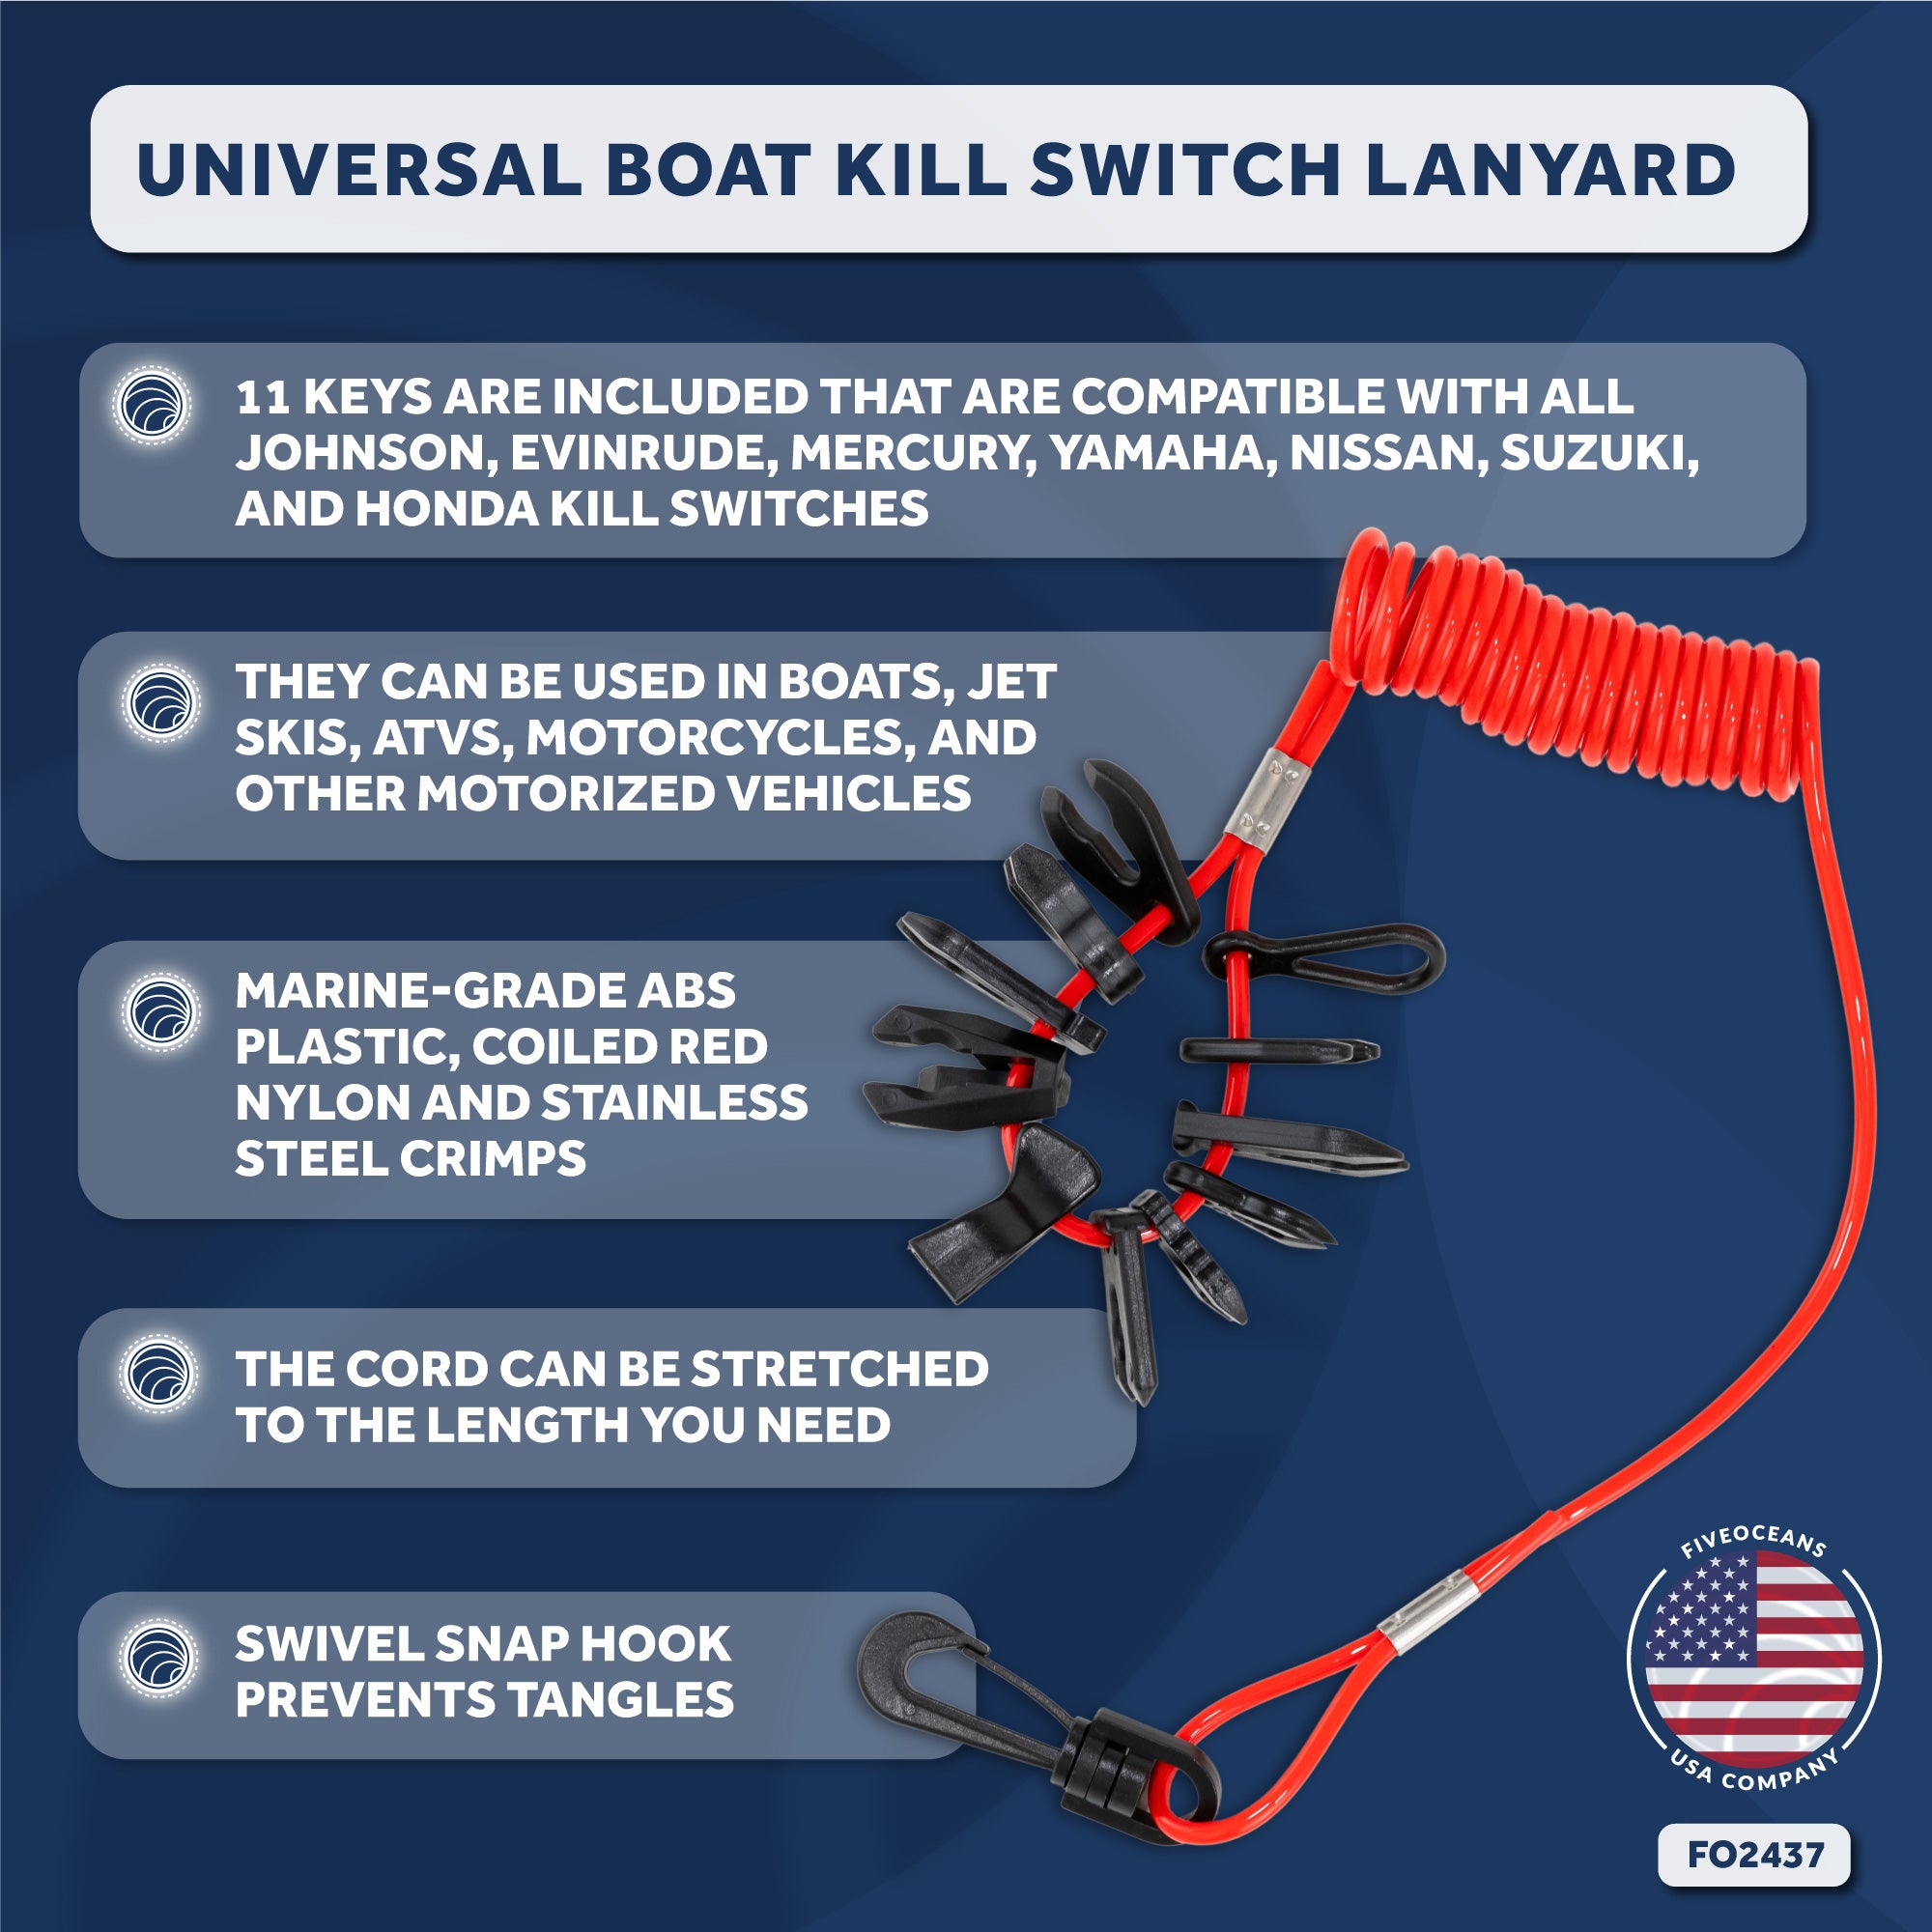 Universal Boat Kill Switch Lanyard - FO2437